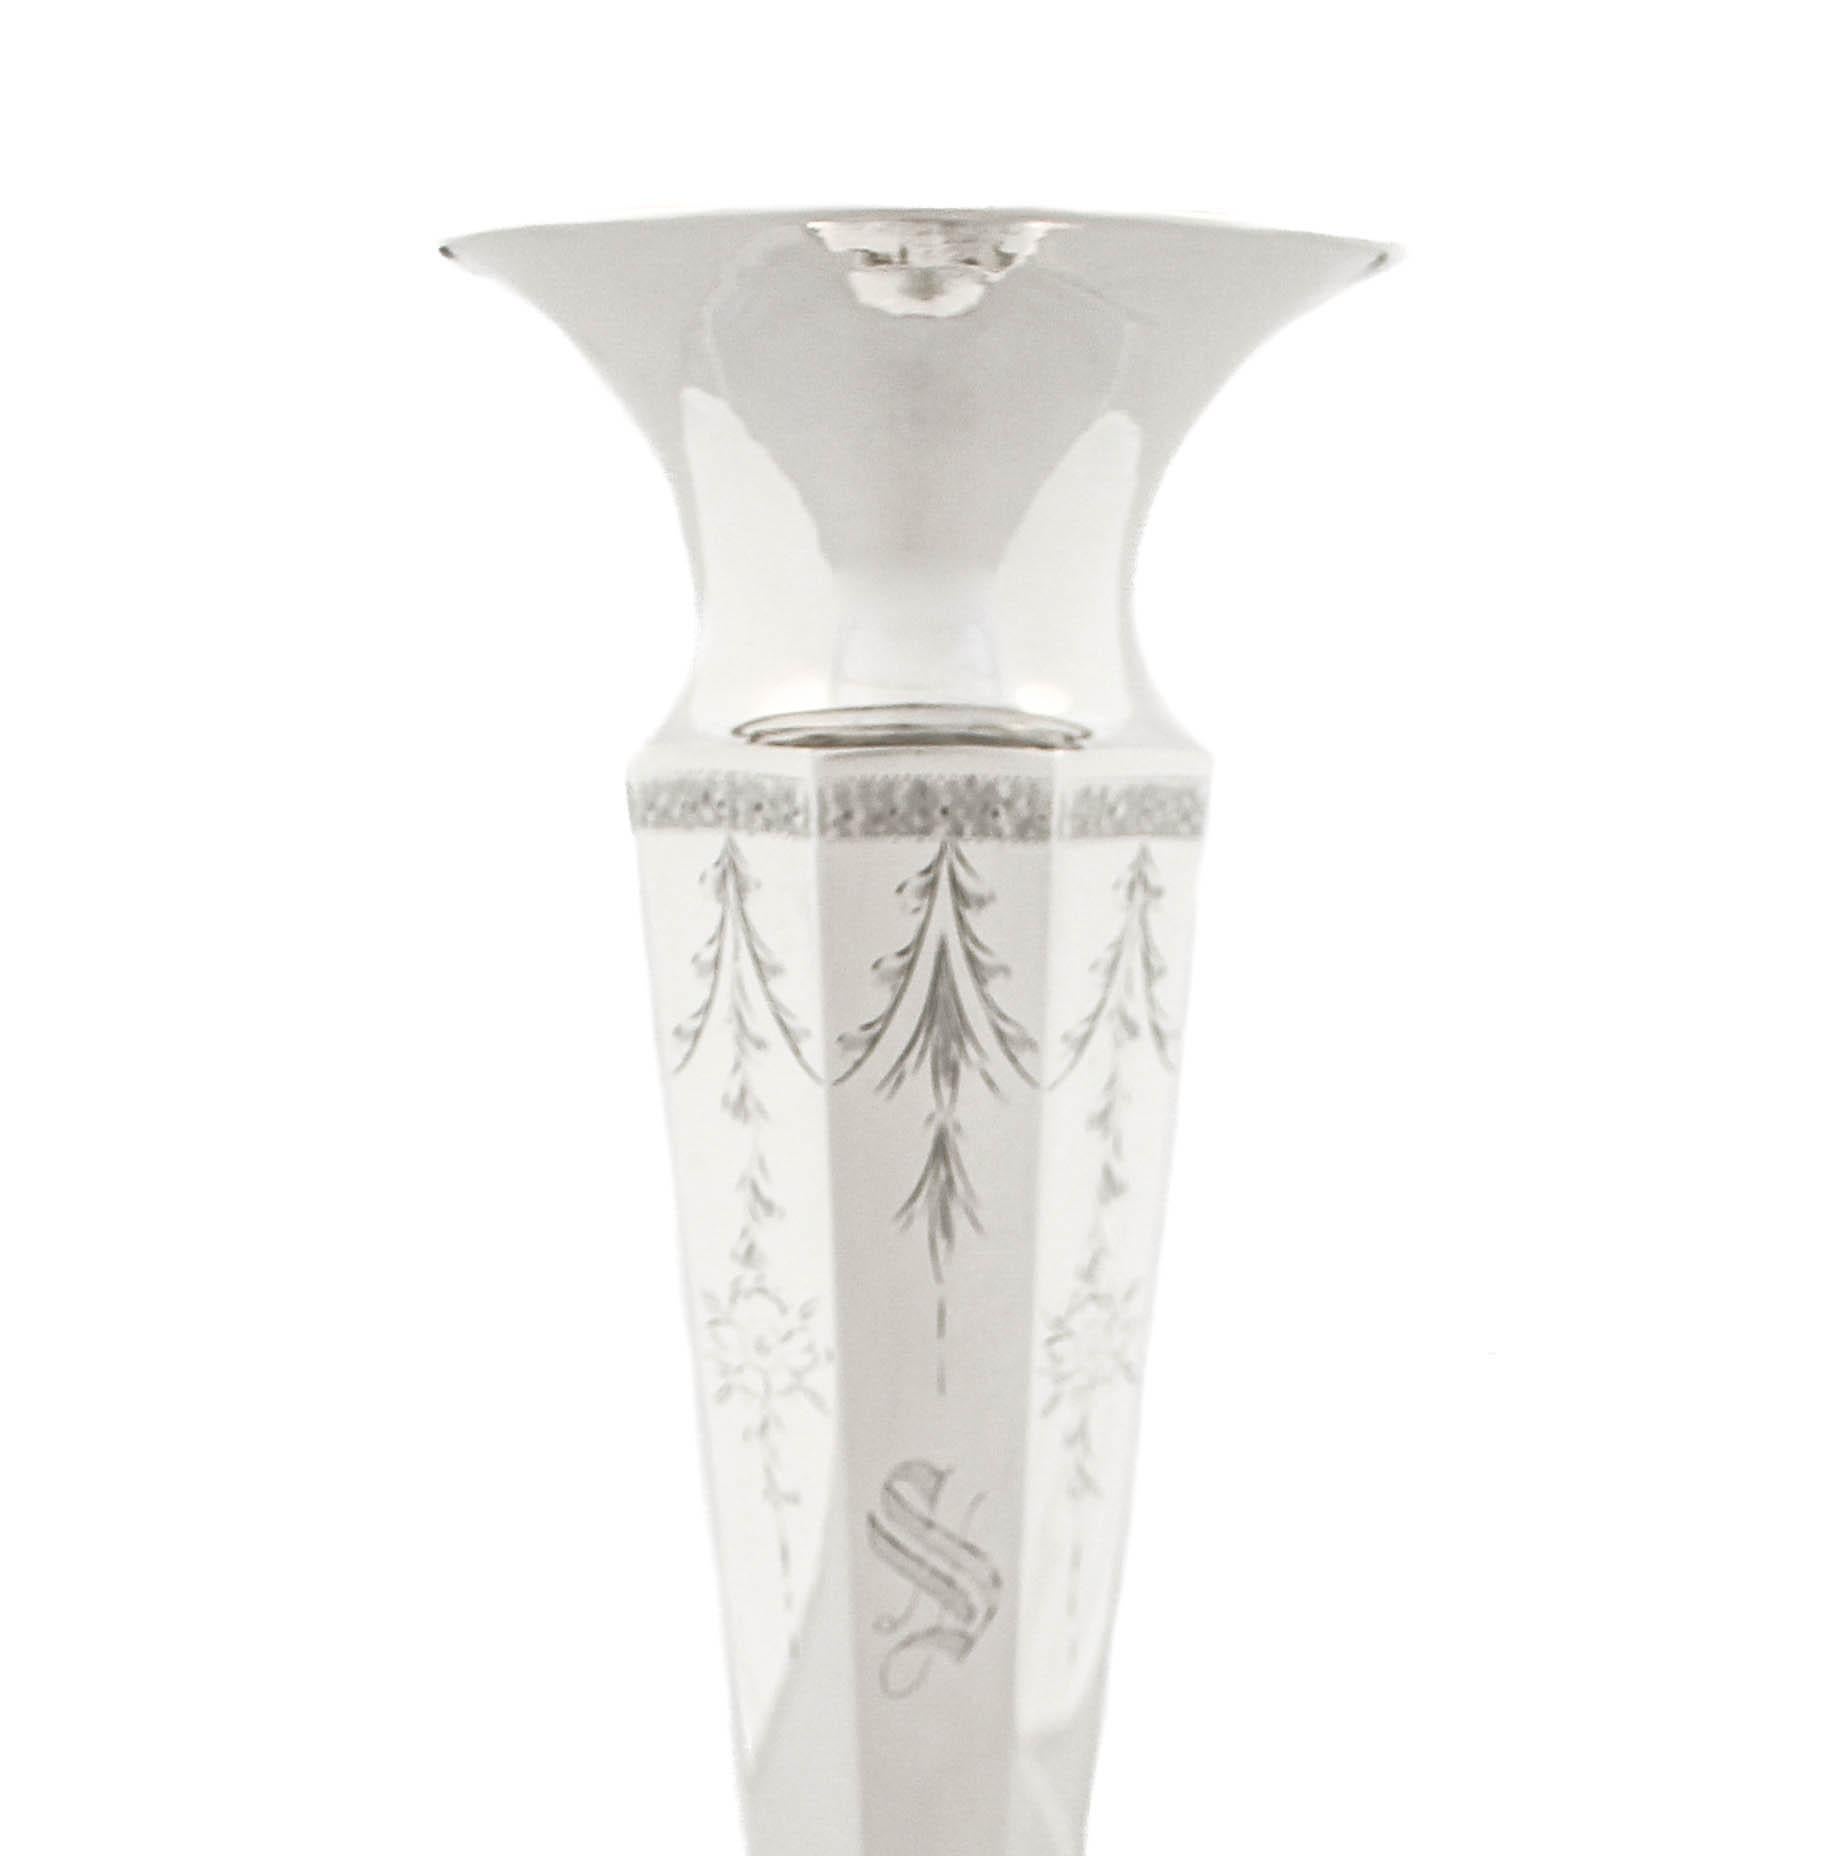 Un vase en argent sterling de Victor Siedman Silver de New York est proposé.  Il présente un design à panneaux et la base (non lestée) est octogonale pour imiter le corps (à côtés).  Le vase est effilé et le bord s'ouvre vers l'extérieur, ce qui